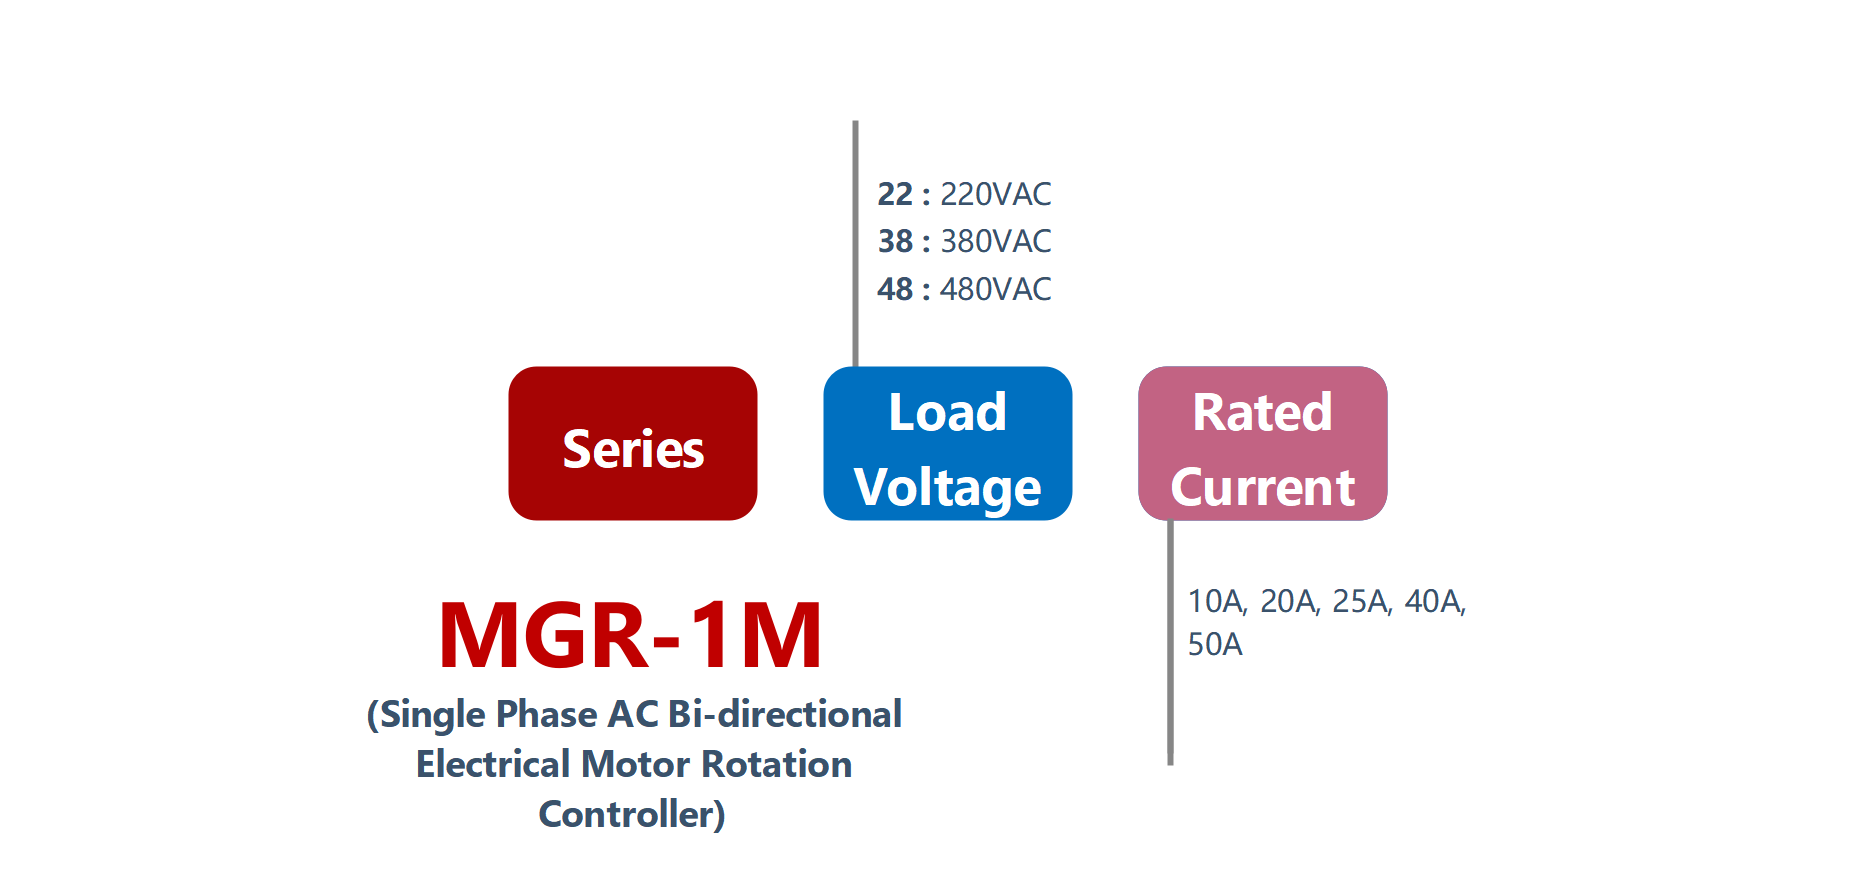 如何订购MGR-1M系列电气电机控制器